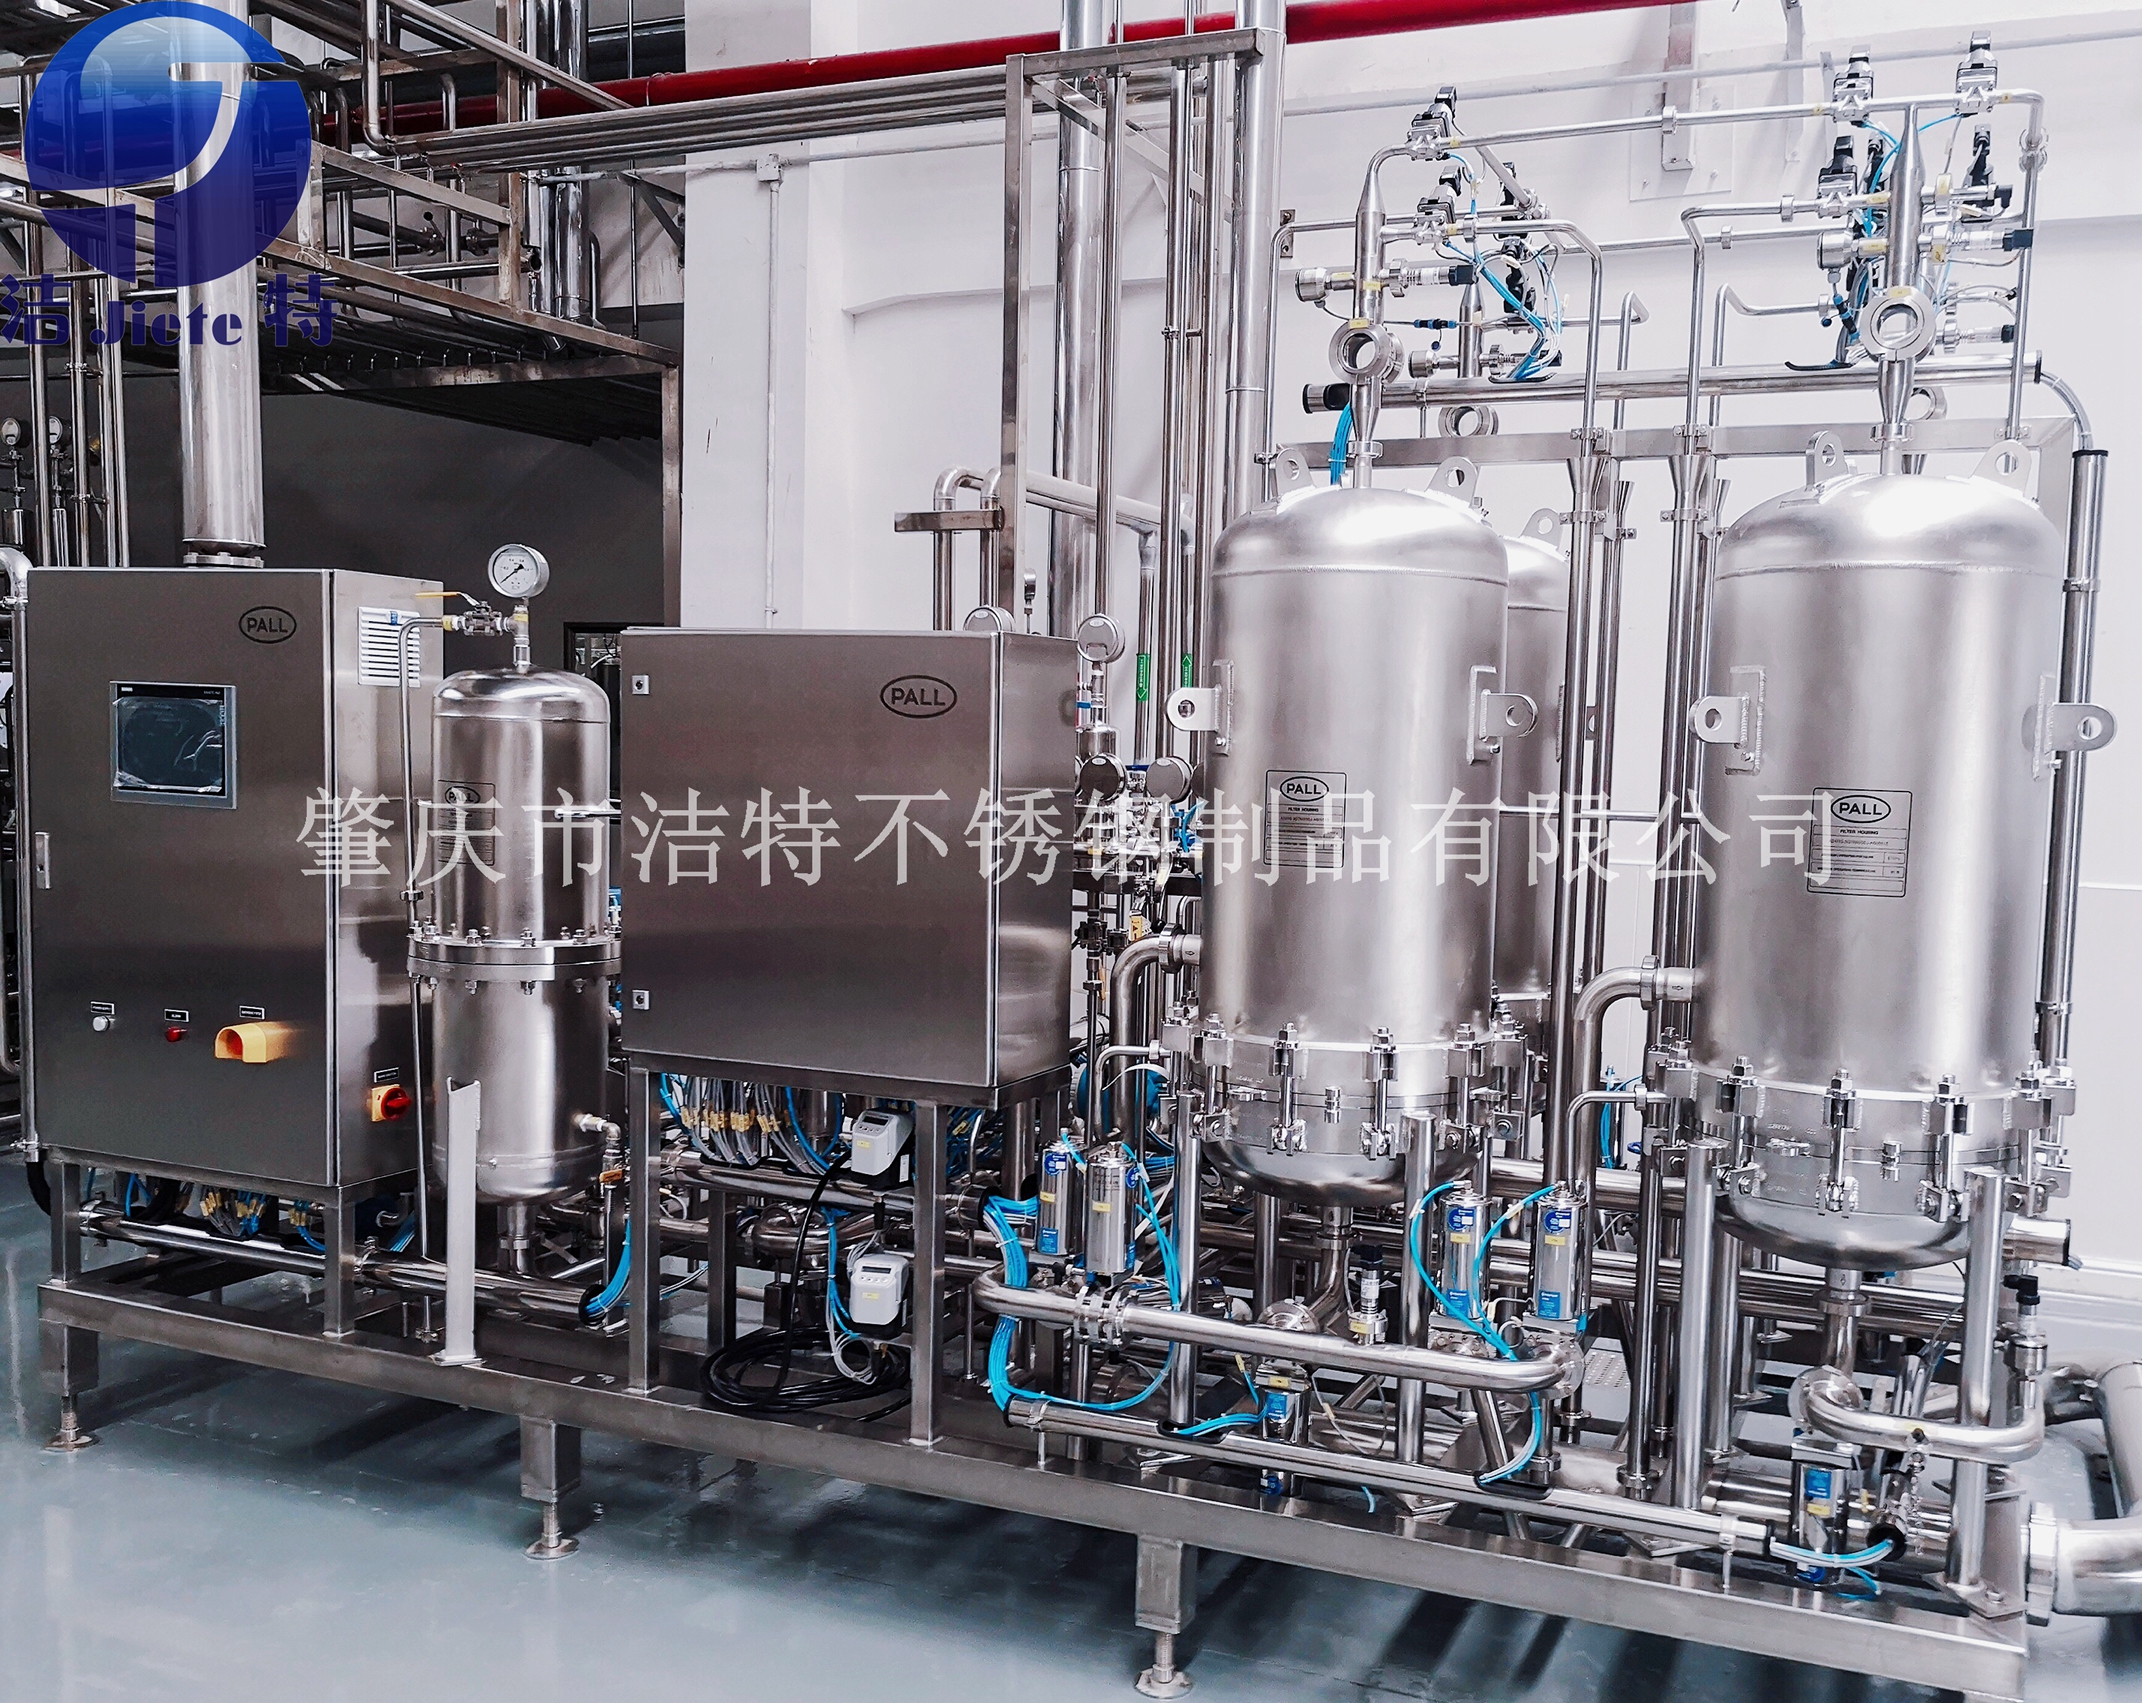 我们推荐肇庆食品生产设备_食品烘焙设备相关-肇庆市高要区洁特不锈钢制品有限公司